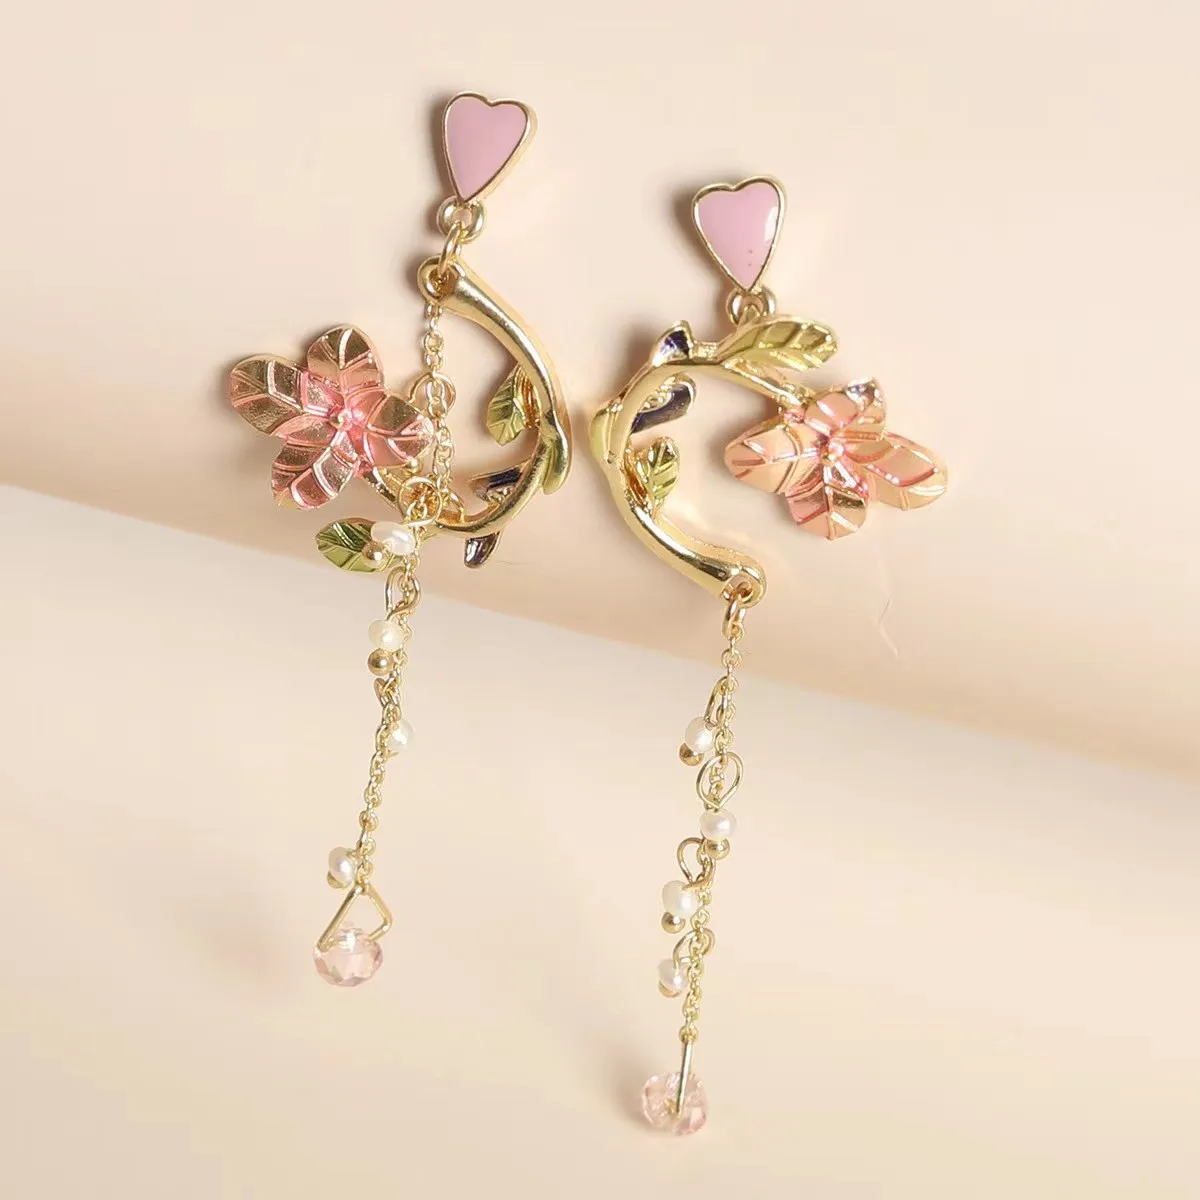 

Flower Earrings Dangle Heart Long Tassels Asymmetric Pearls Pink Crystal Pendant Jewelry For Women 2022 New Korean Luxury Gifts